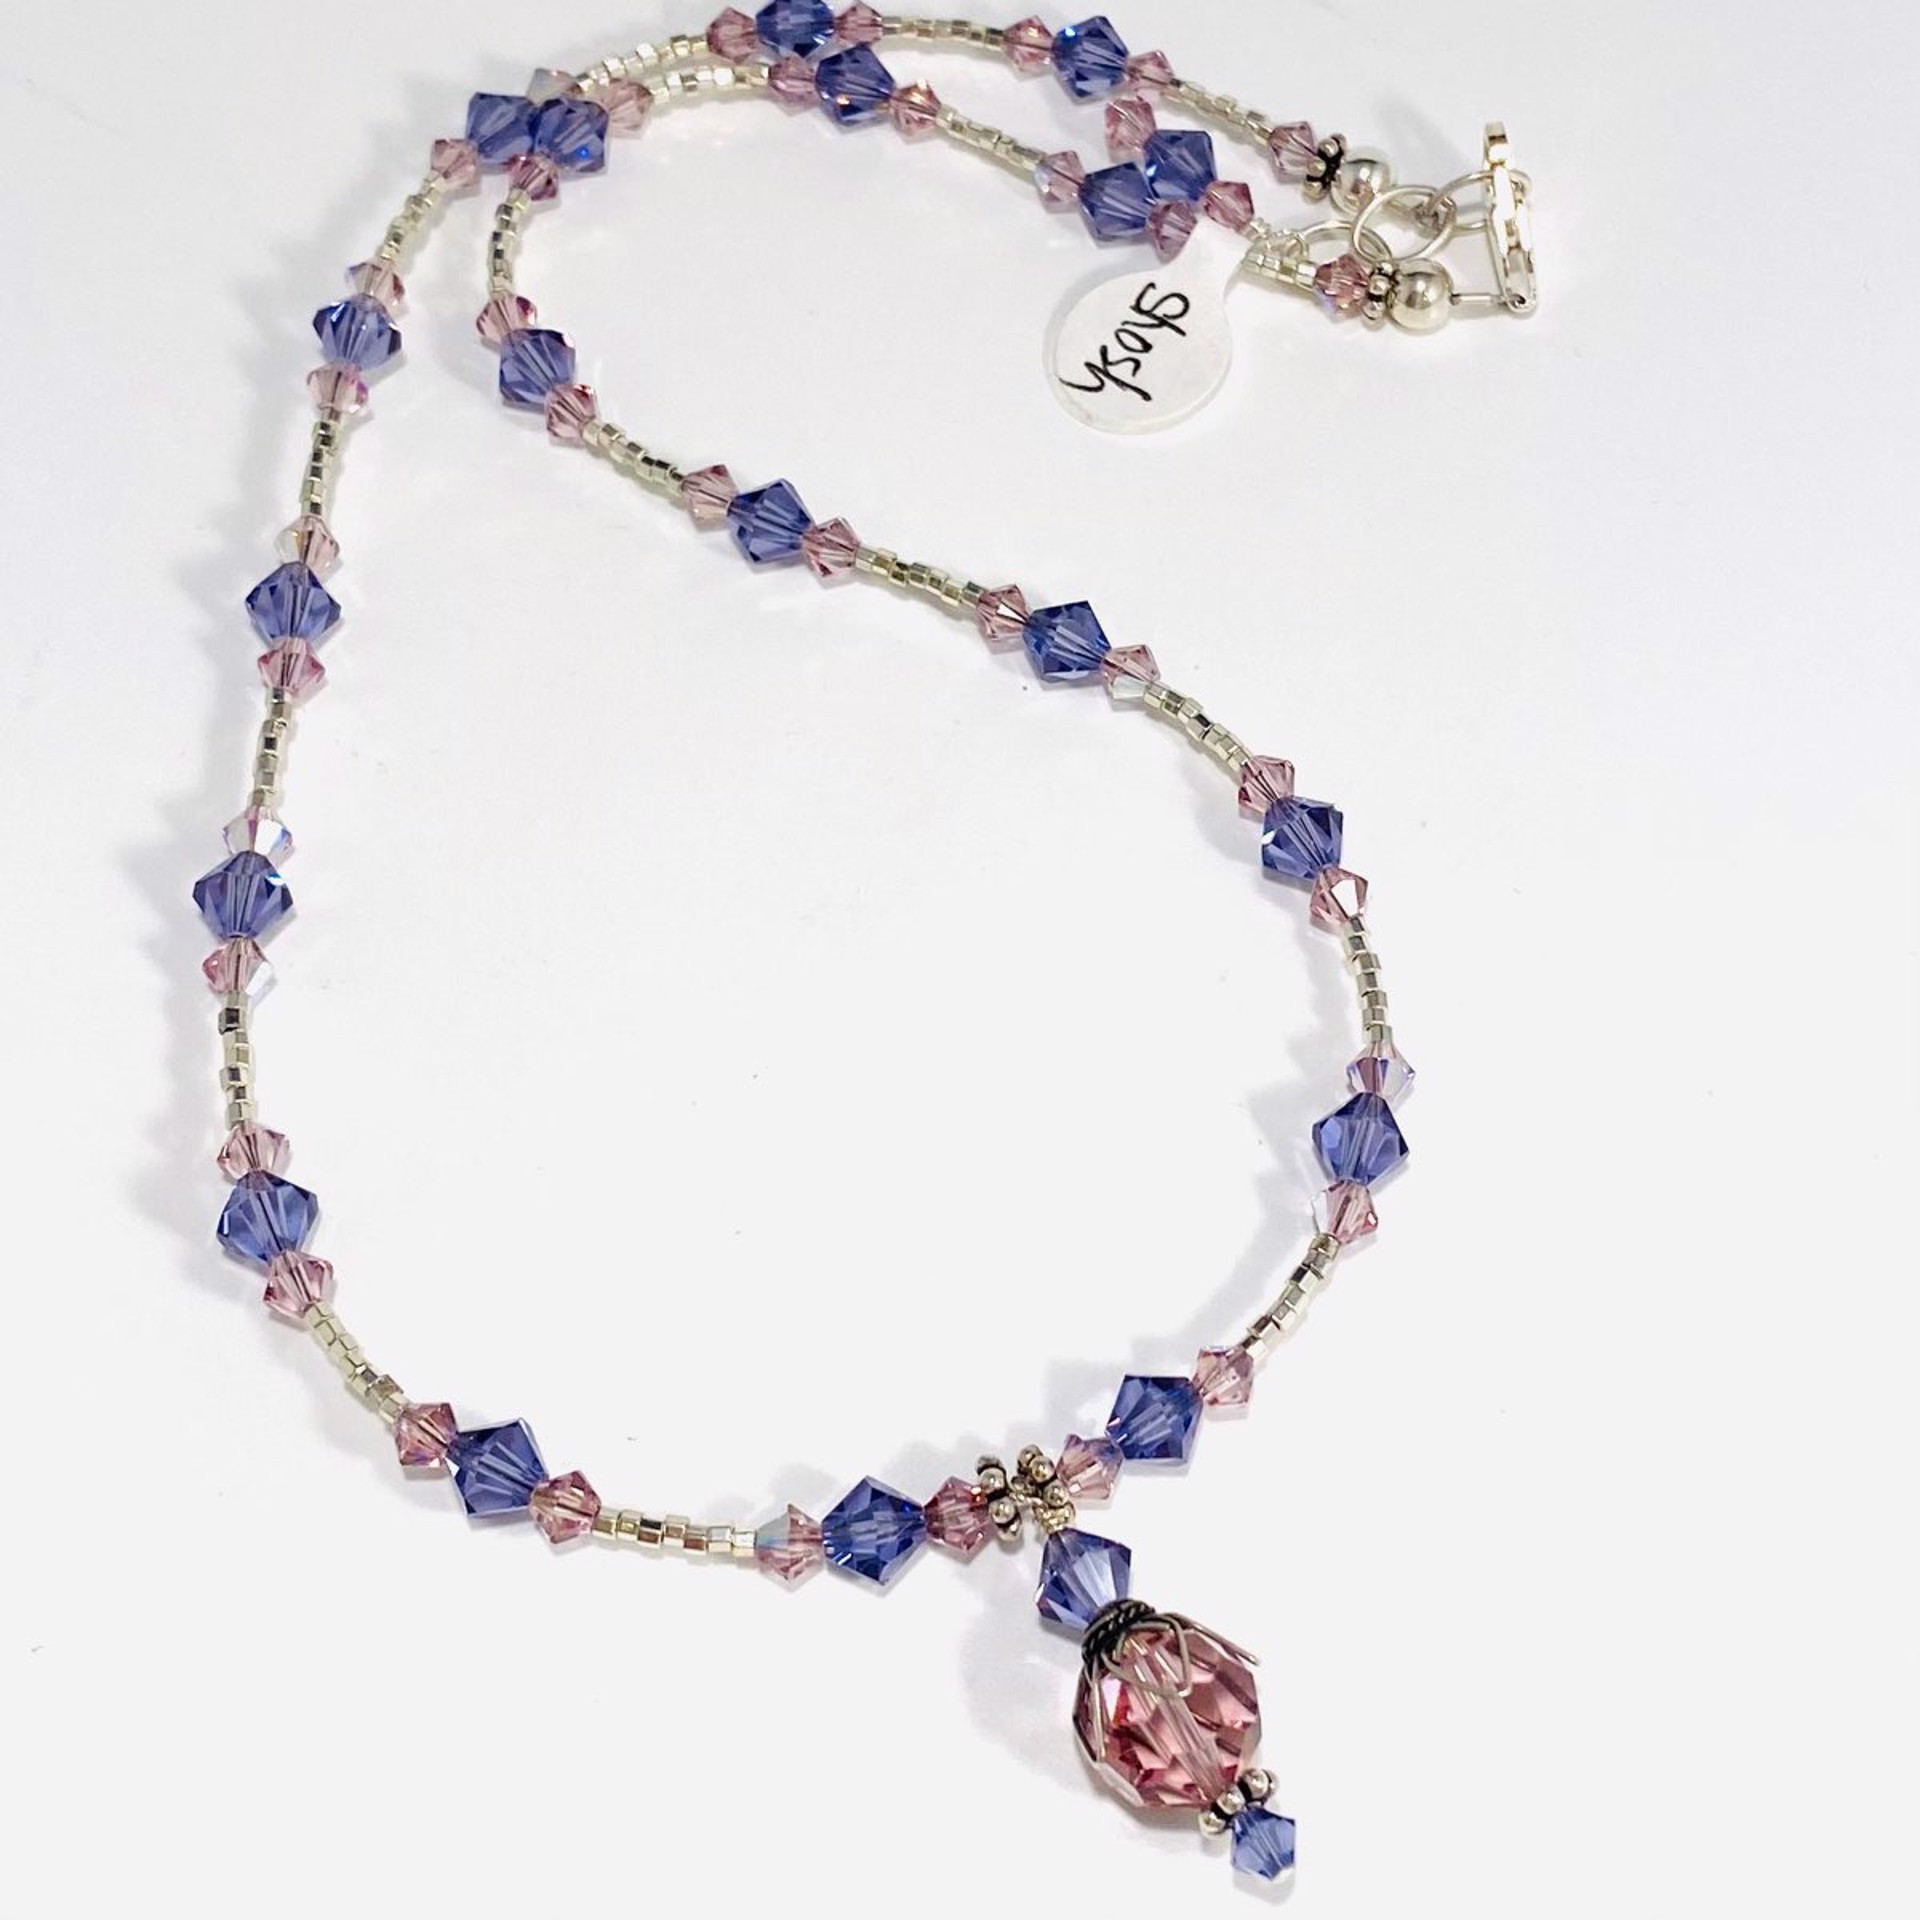 Birthstone Necklace~June Alexanderite Swarovski Crystals SHOSH22-11 by Shoshannah Weinisch